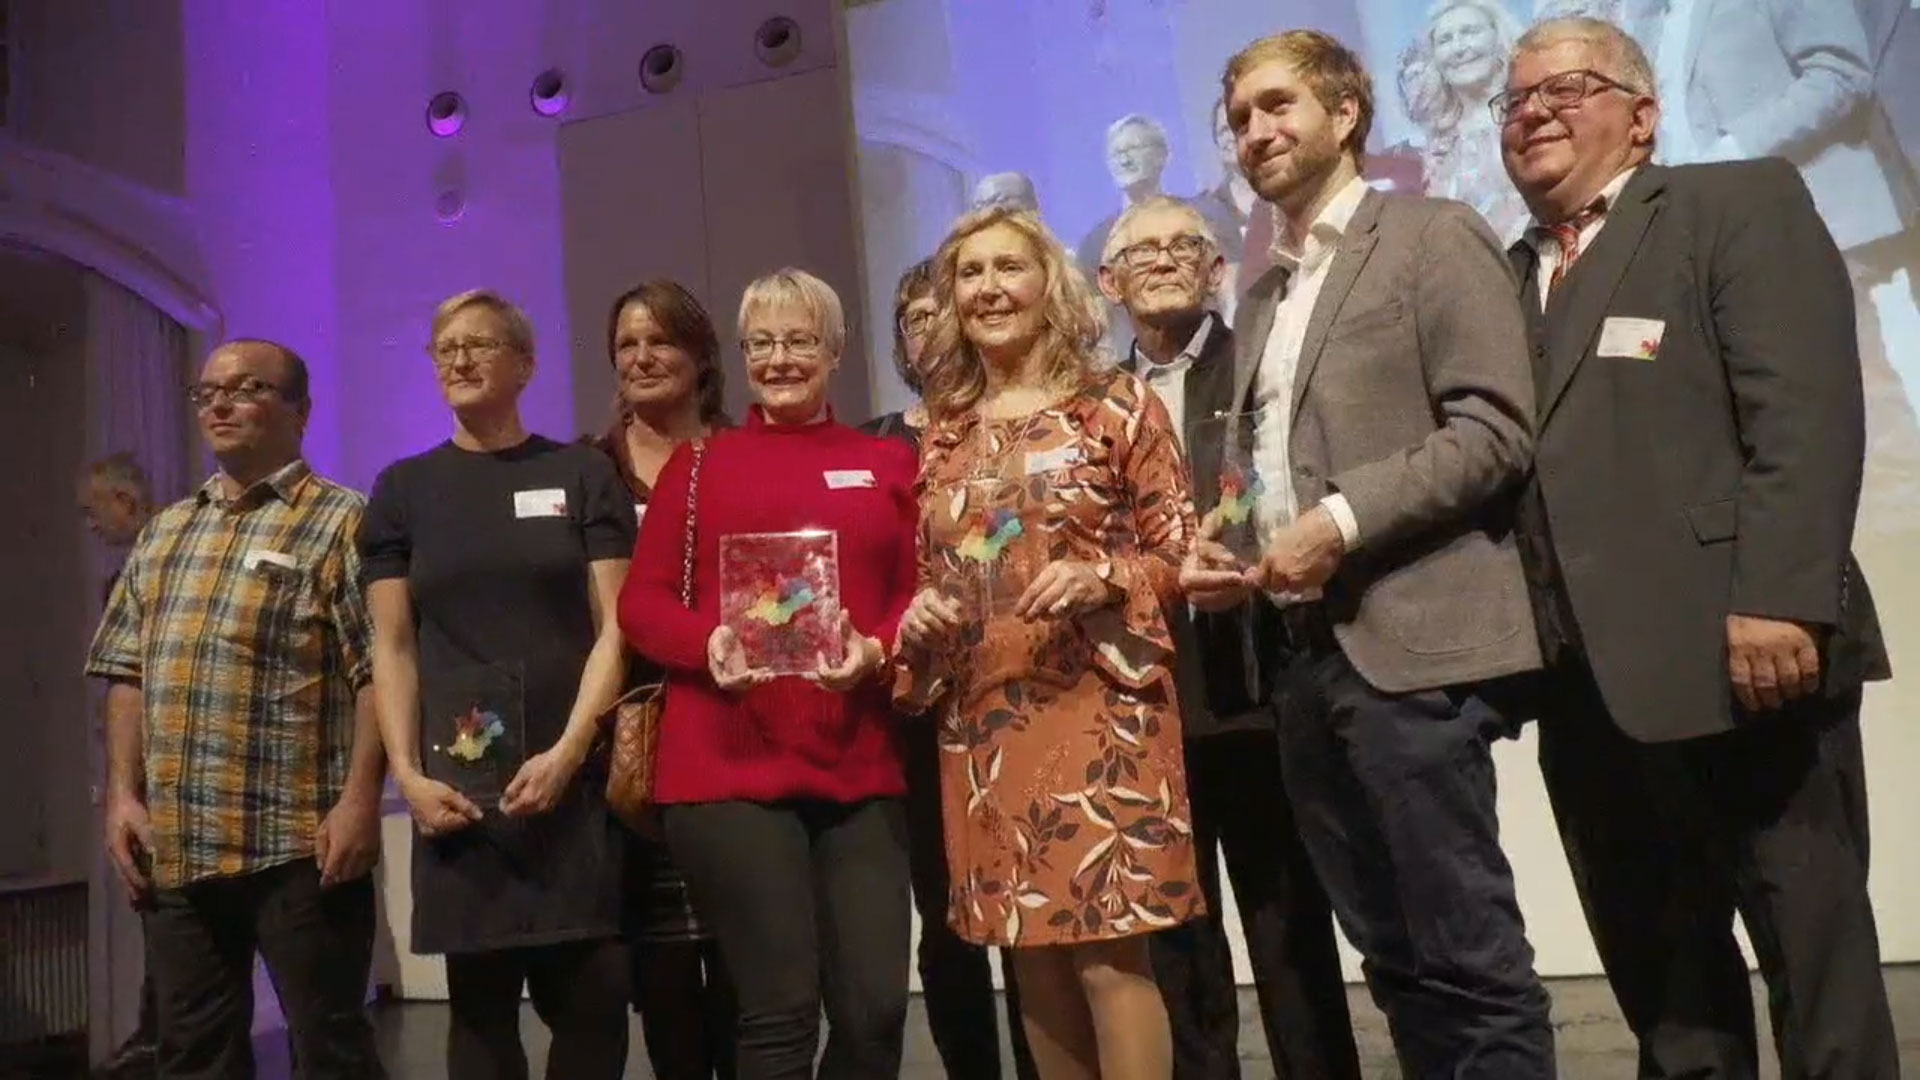 Begegnungsheld 2019: Das Lui20. Gabi Müssig (3. v. li.) und Simone Oswald (4. v. li.) nahmen die Auszeichnung für das Lui20 entgegen. © Helden der Heimat, Screenshot